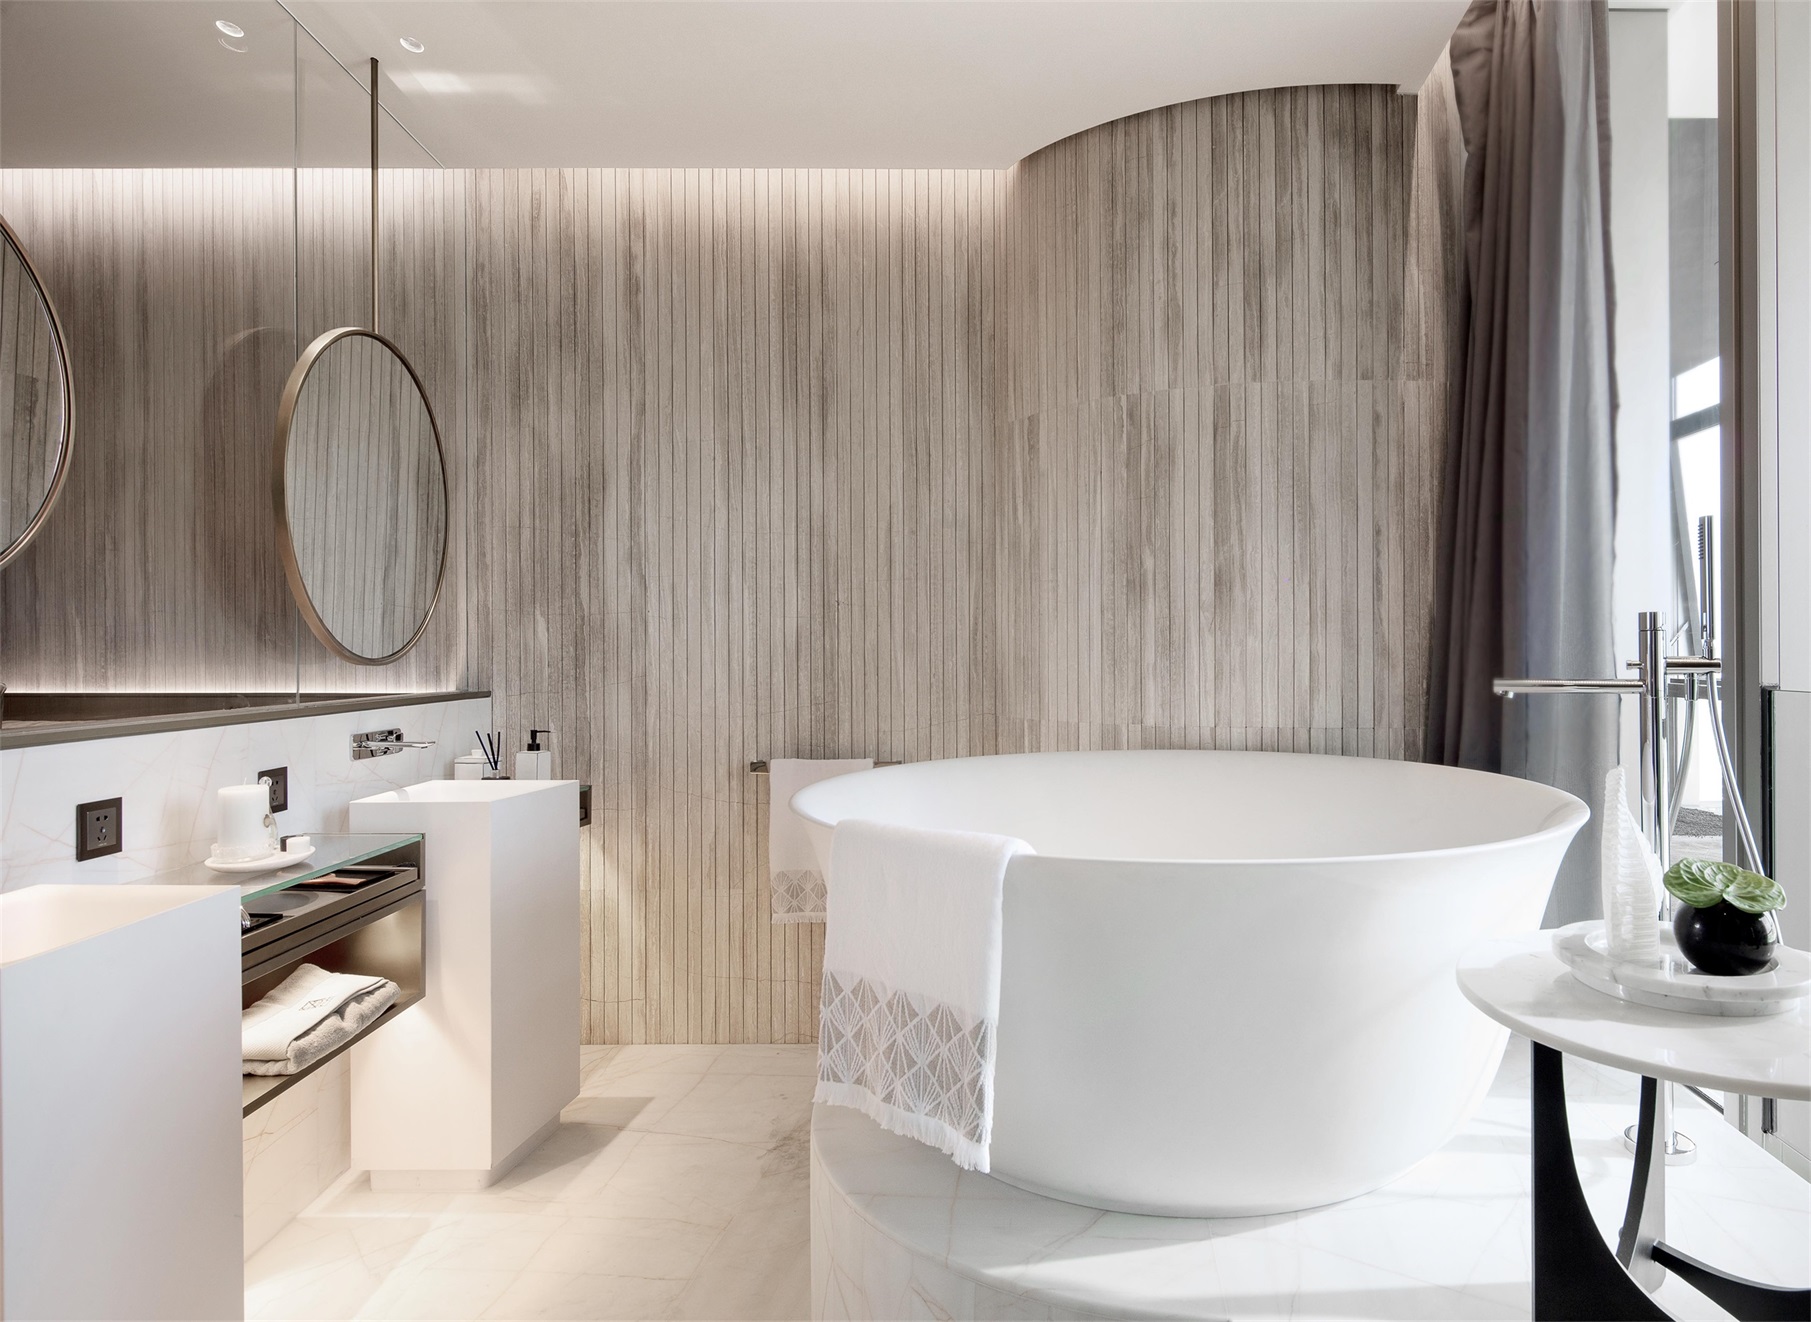 卫生间采用白色和木色柔和，采光和通透性较好，营造出慵懒惬意的空间氛围。